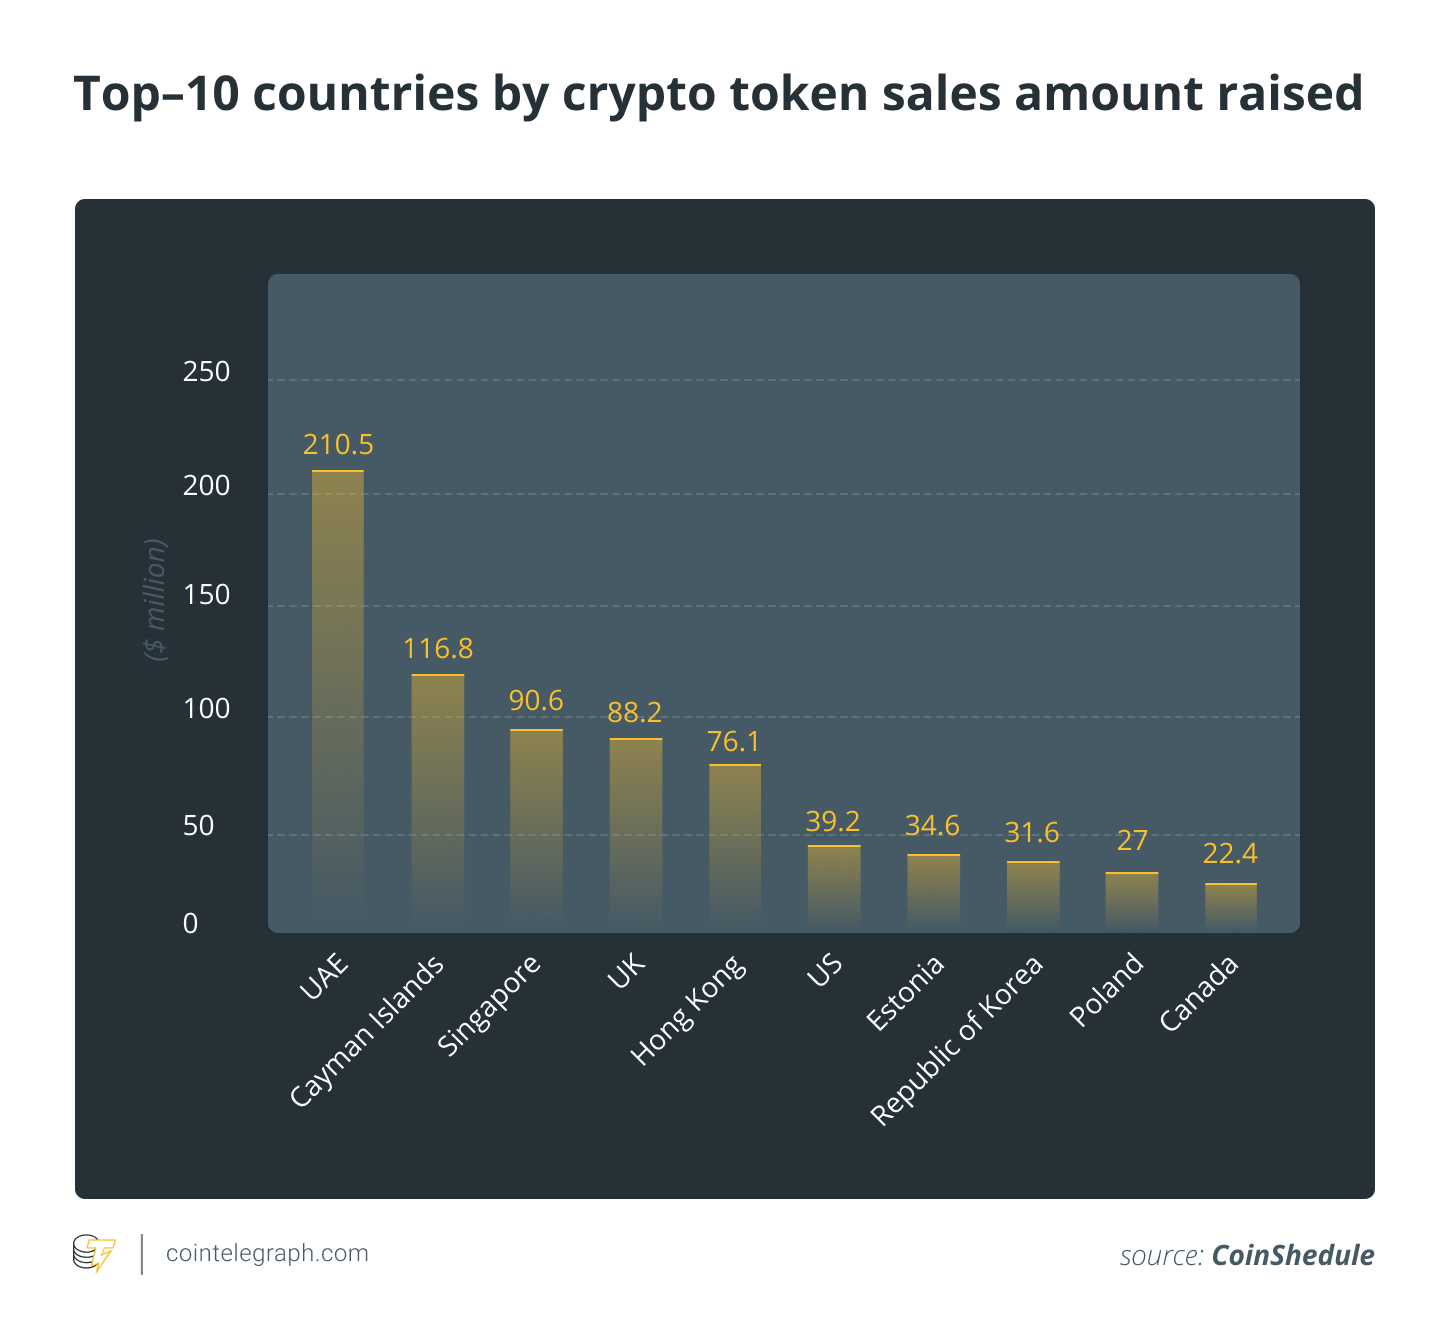 Top 10 valstis pēc kriptogrāfijas marķējuma pārdošanas apjoma